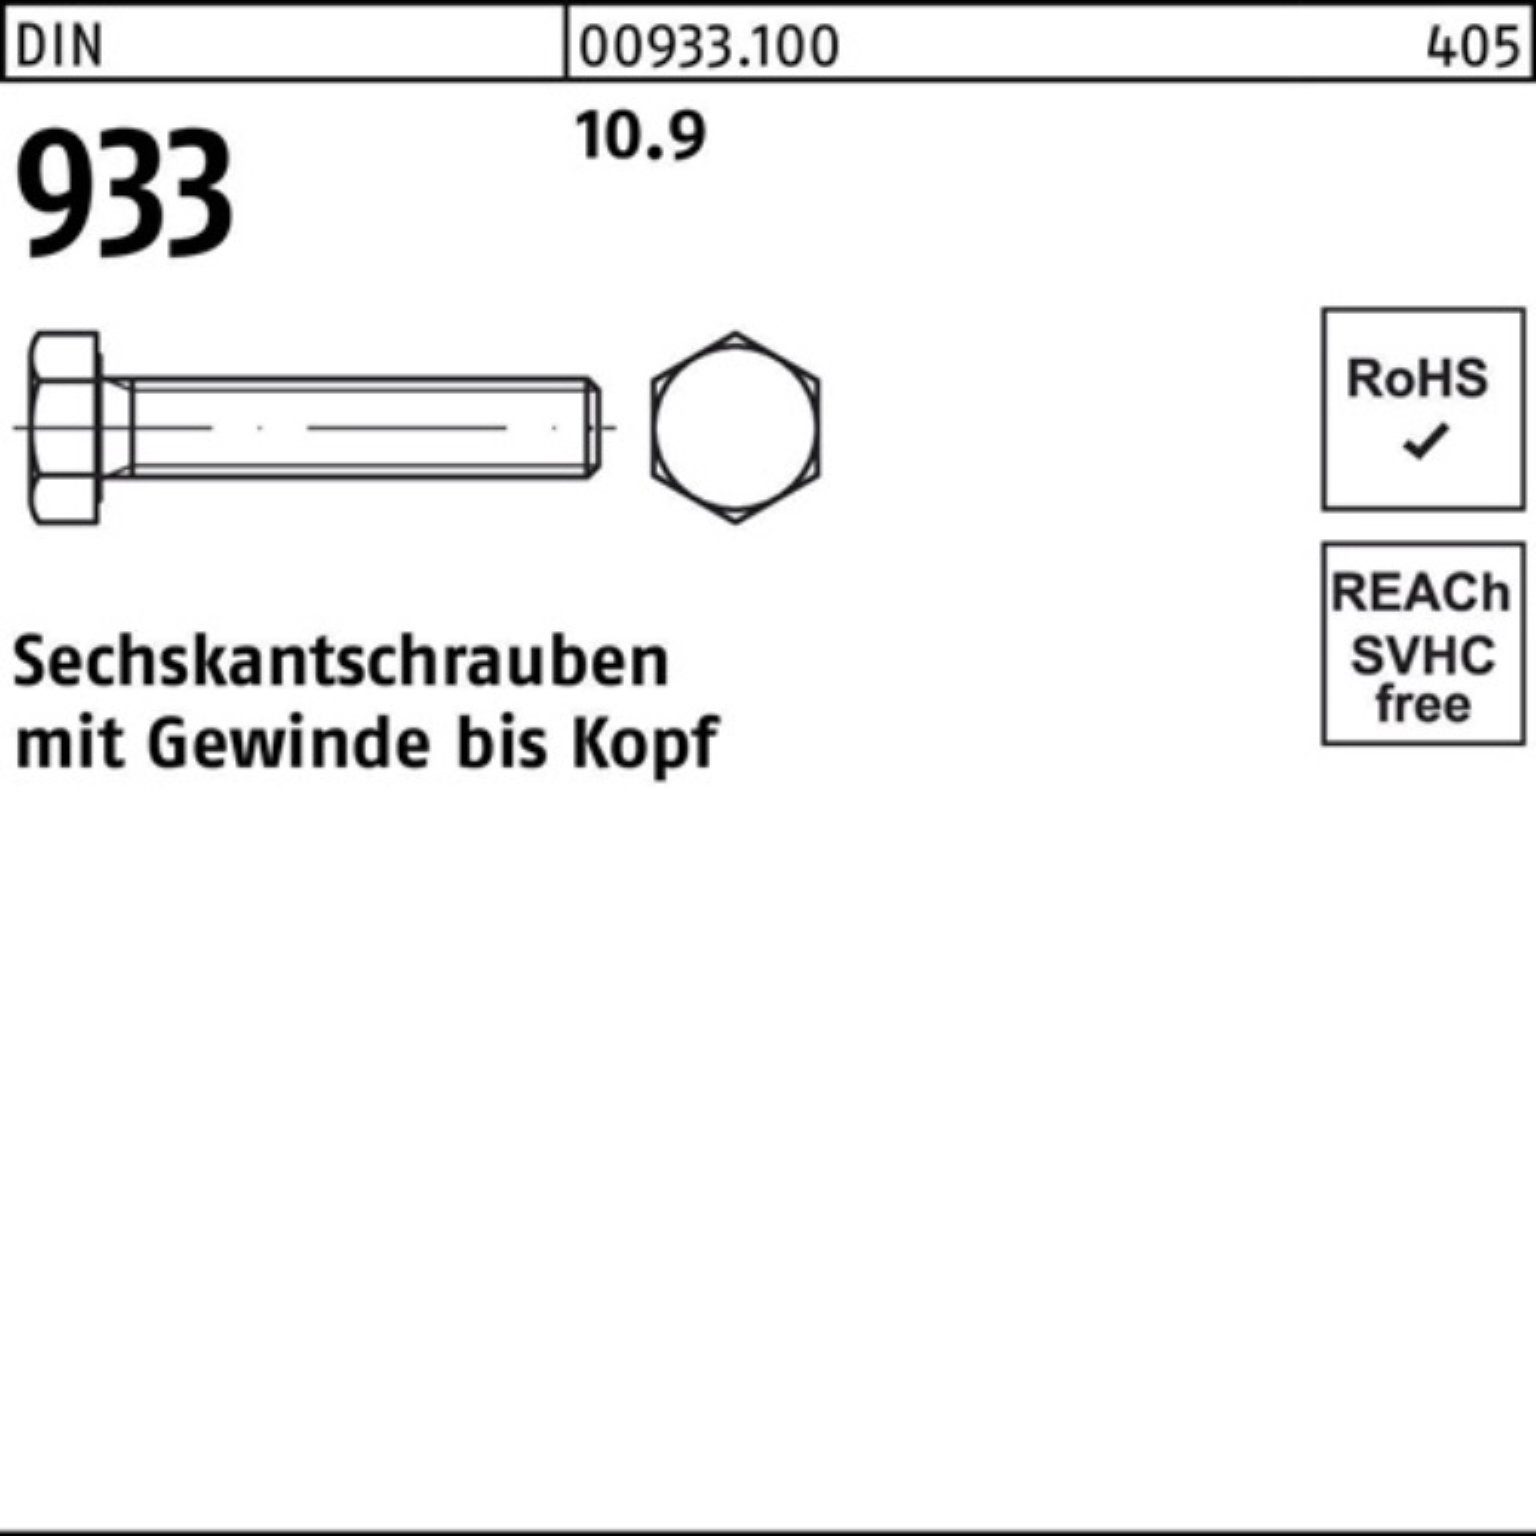 VG 10.9 100er Reyher 933 M36x Sechskantschraube Pack 75 933 1 Sechskantschraube DIN Stück DIN